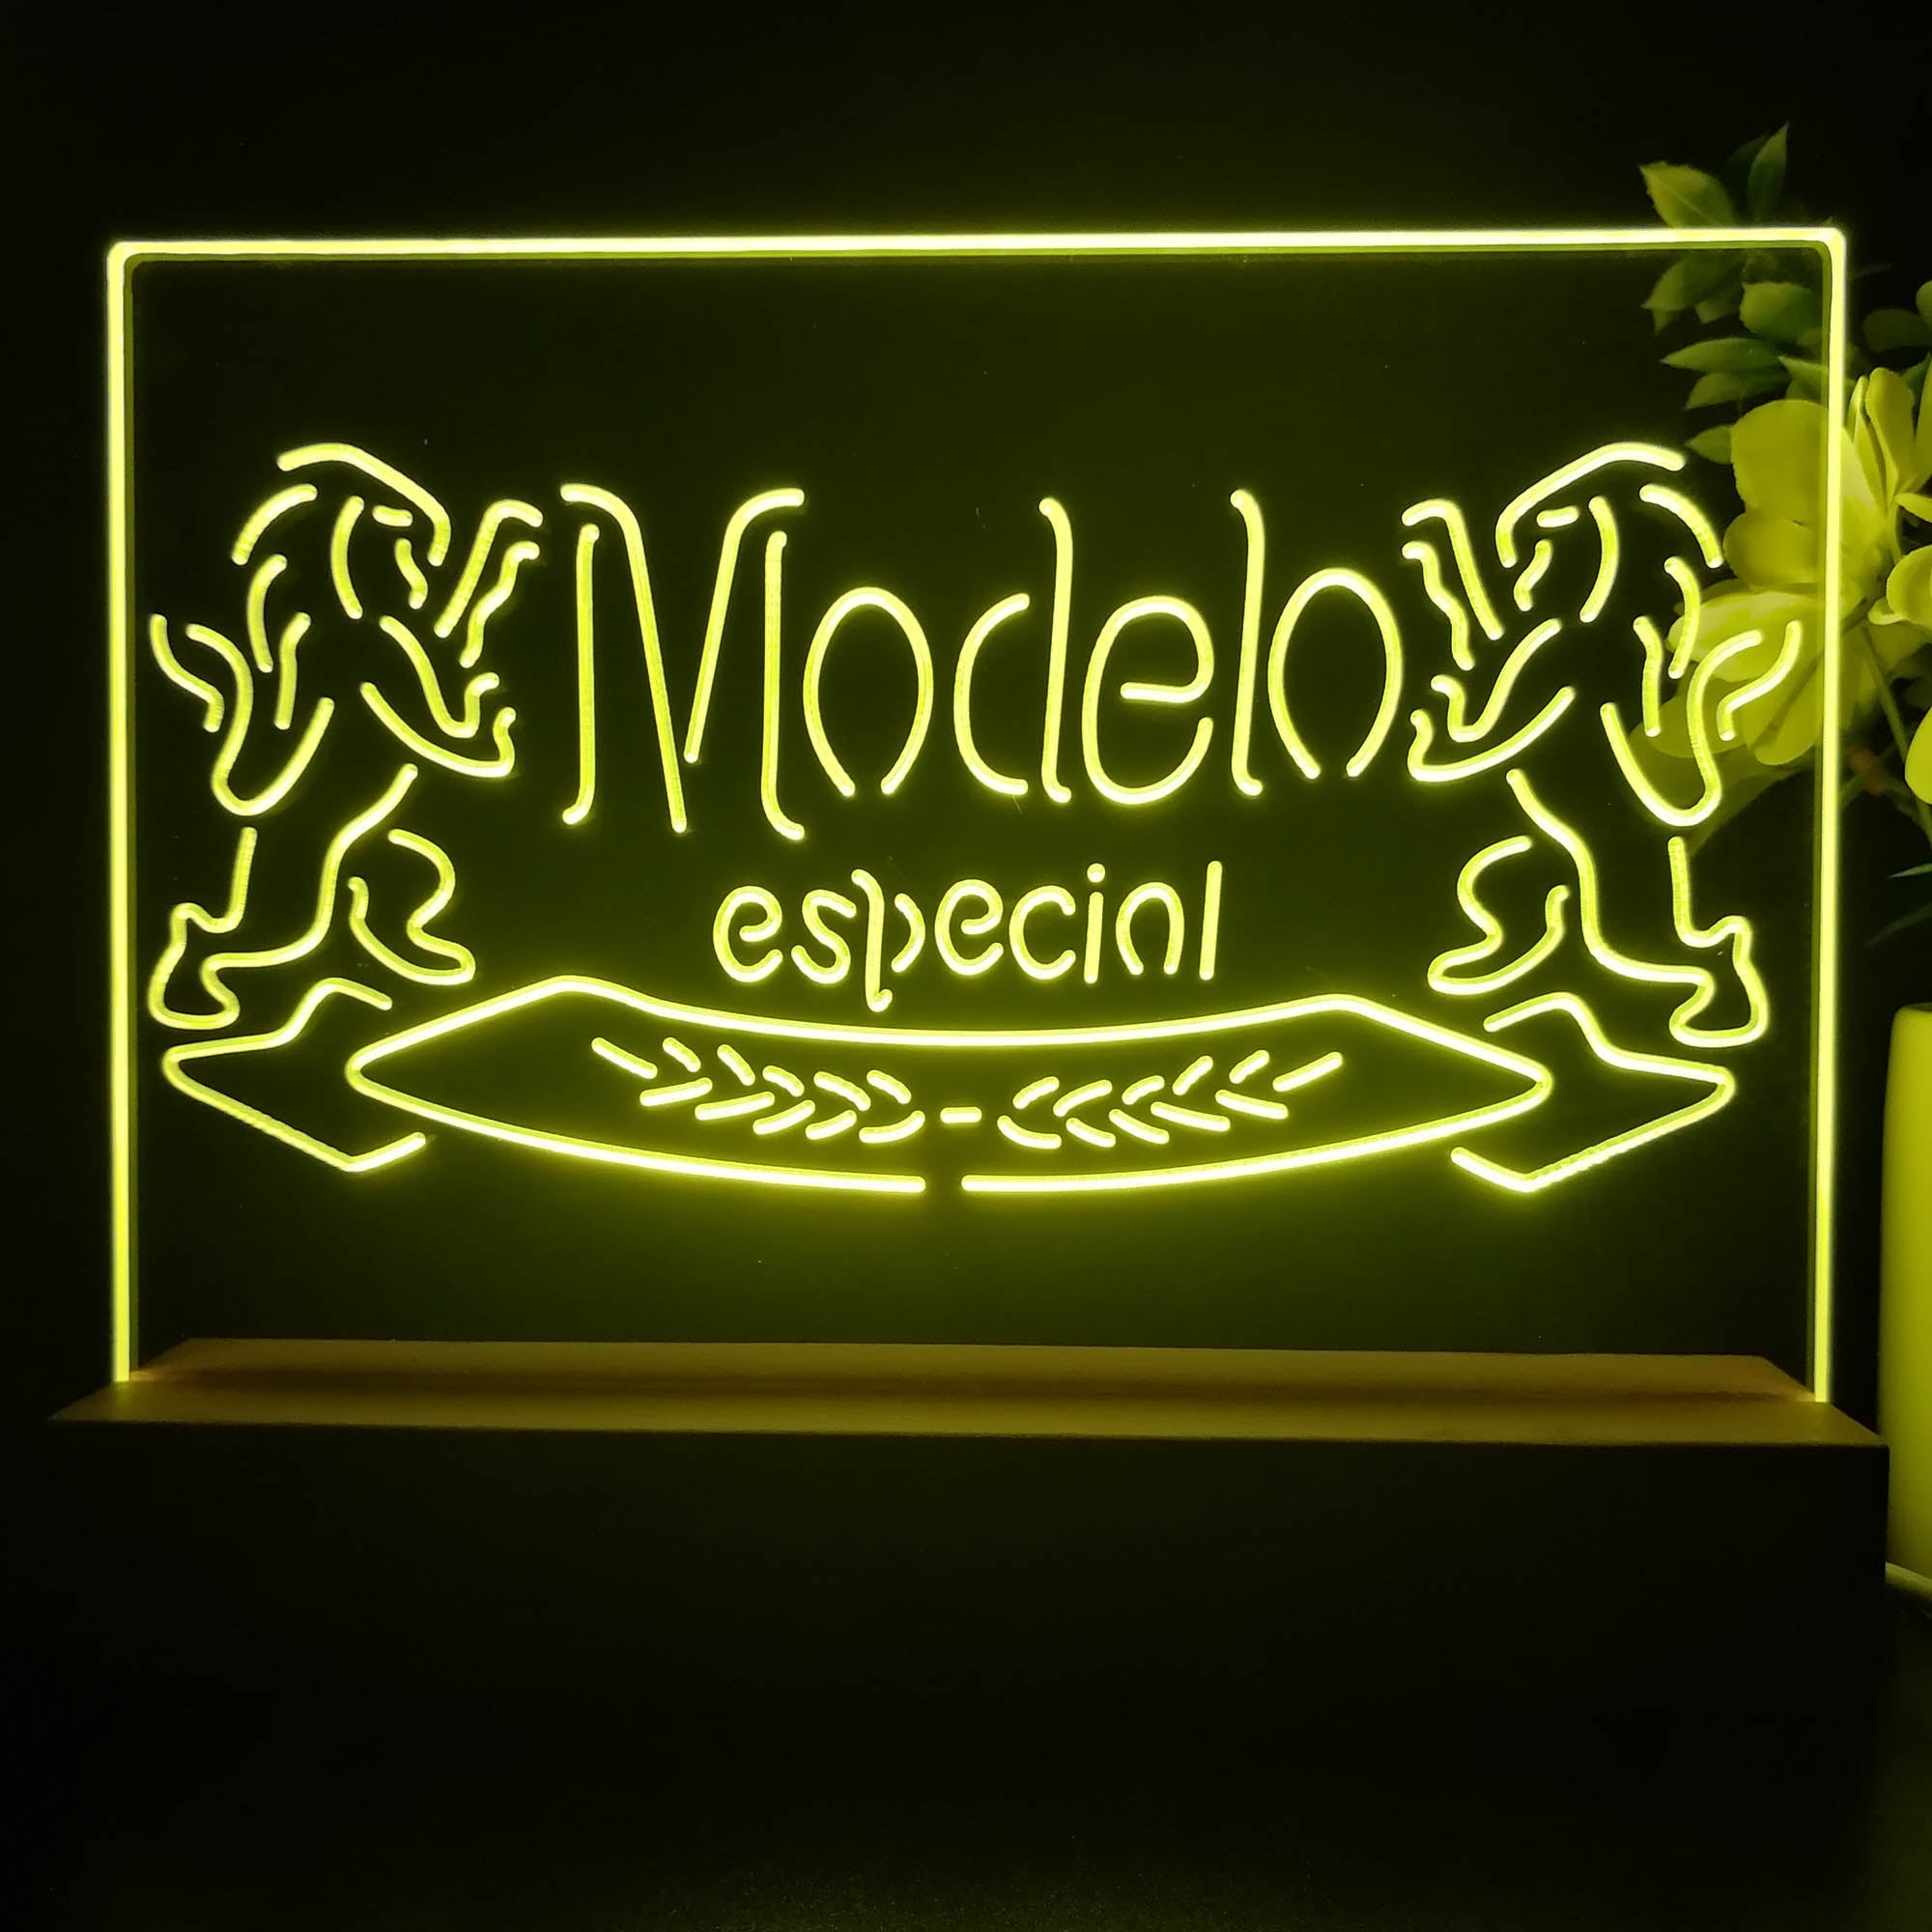 Modelos Especials Beers Lions Neon Sign Pub Bar Lamp